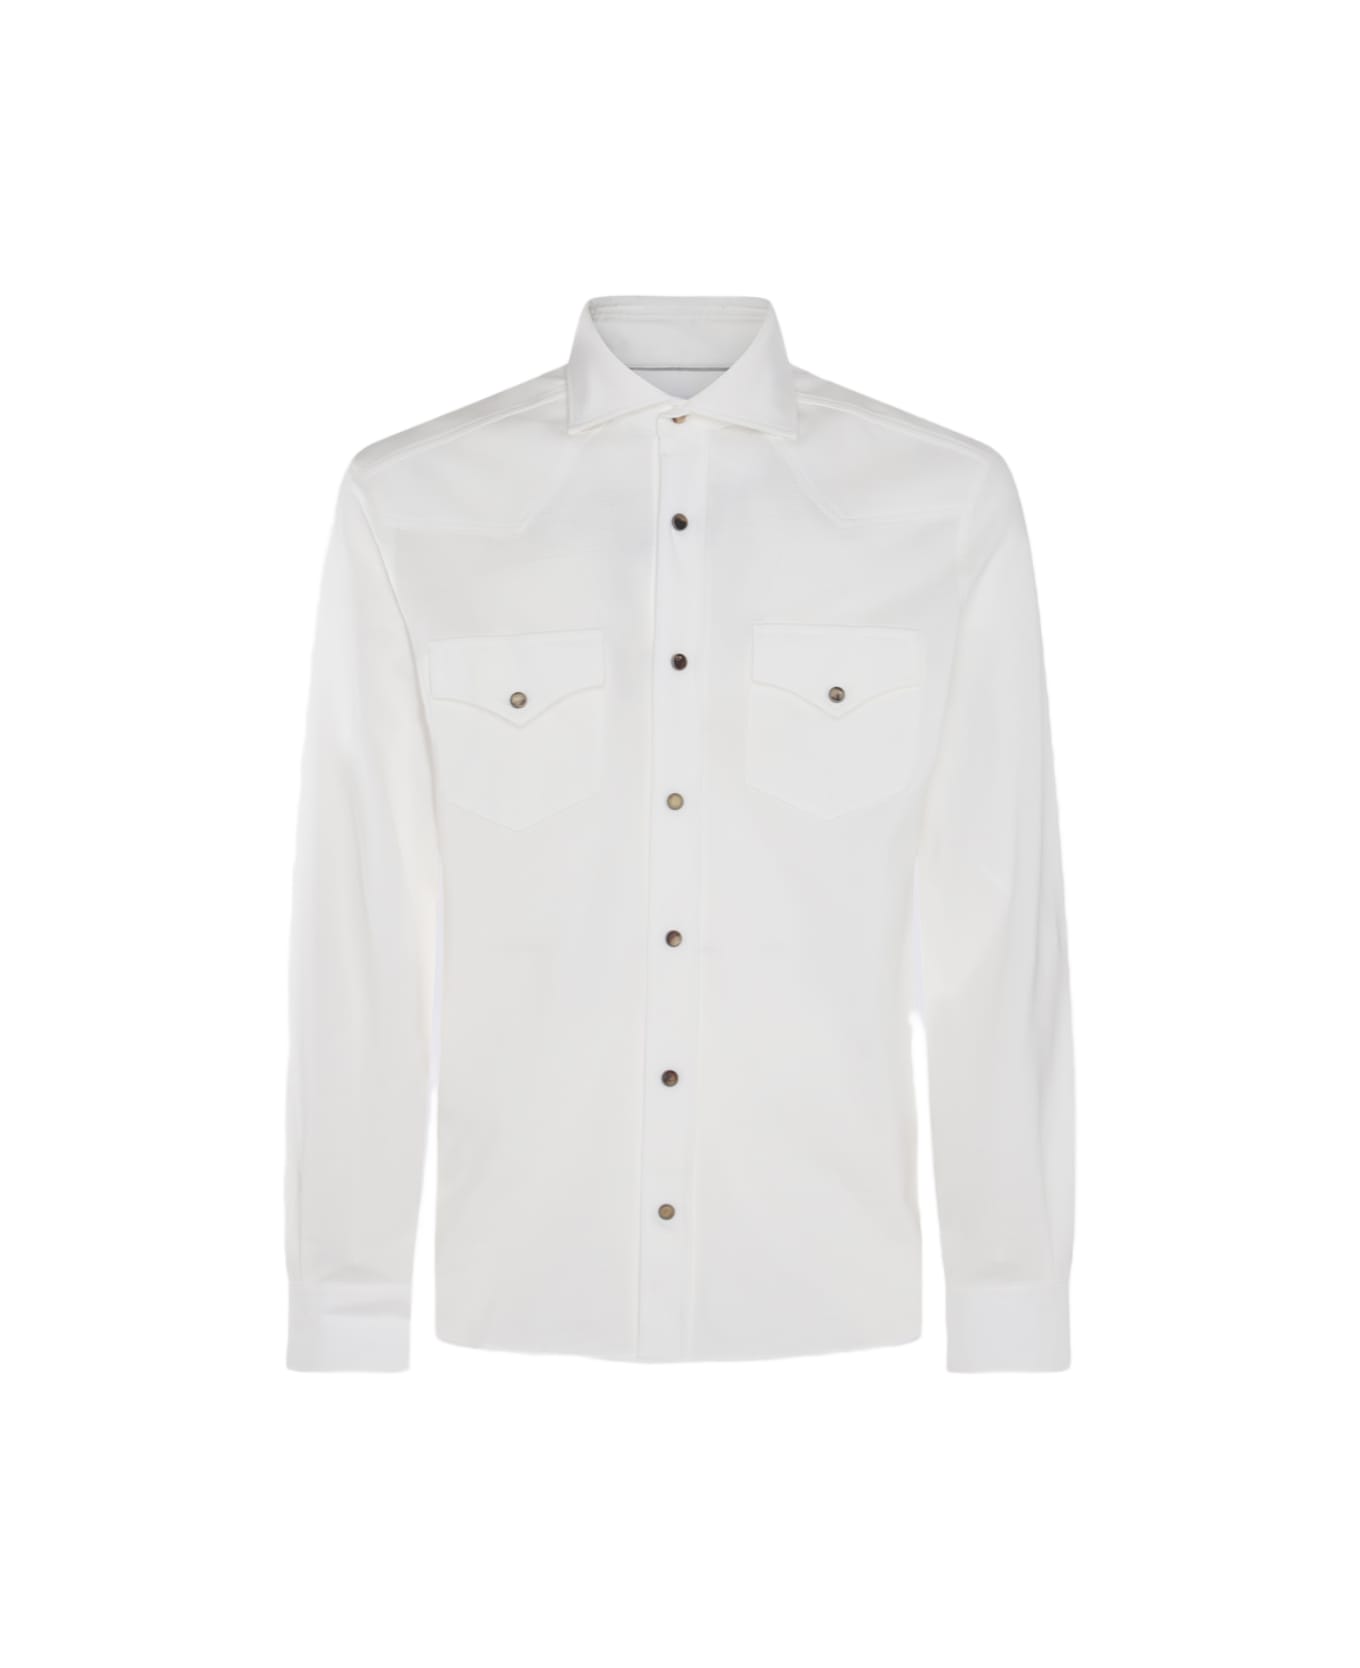 Brunello Cucinelli White Cotton Shirt - Beige シャツ